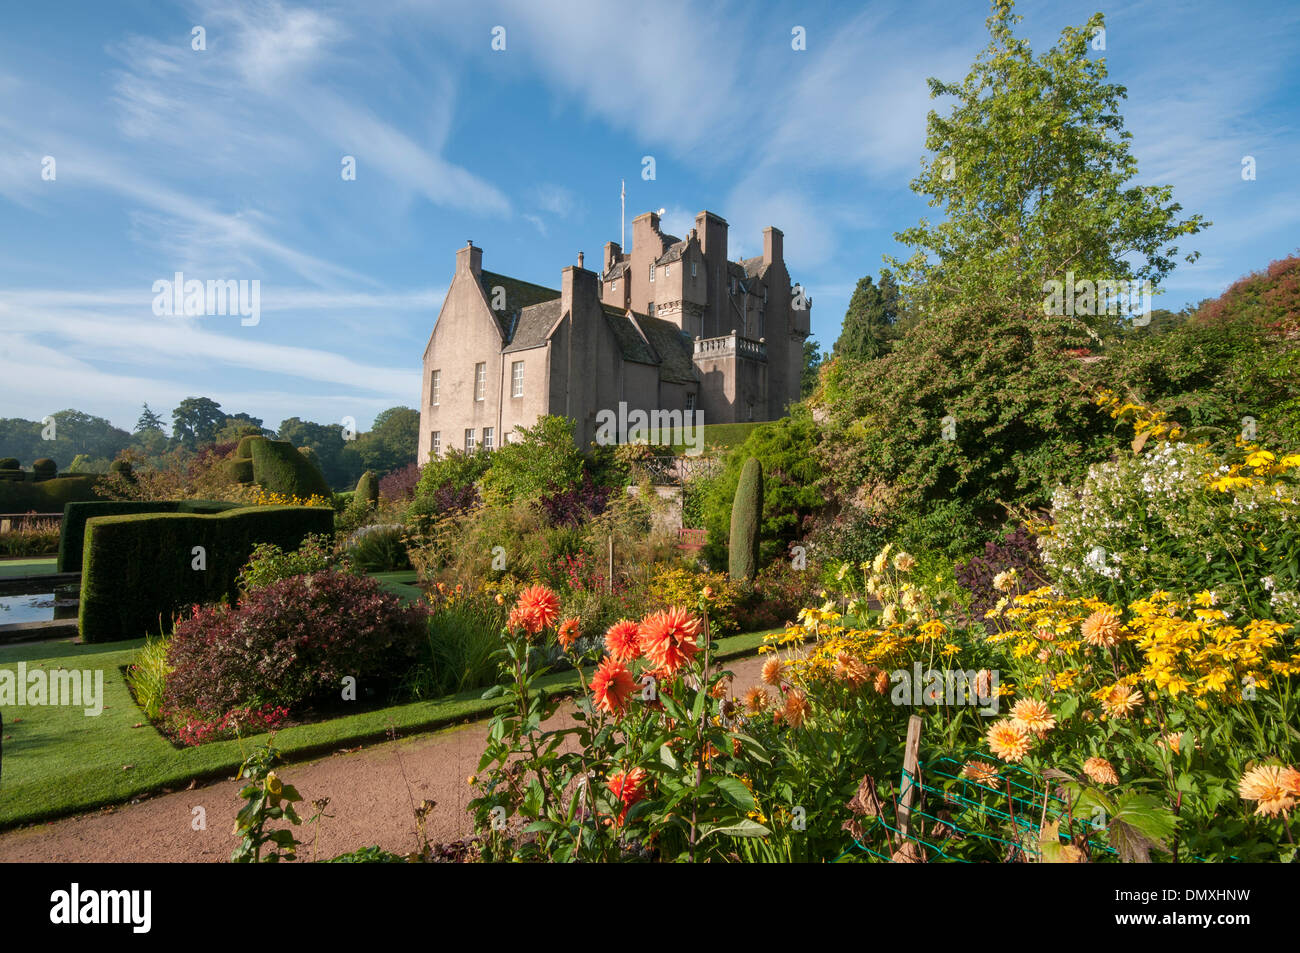 Le Château de Crathes deeside aberdeen près de banchory un château écossais Banque D'Images